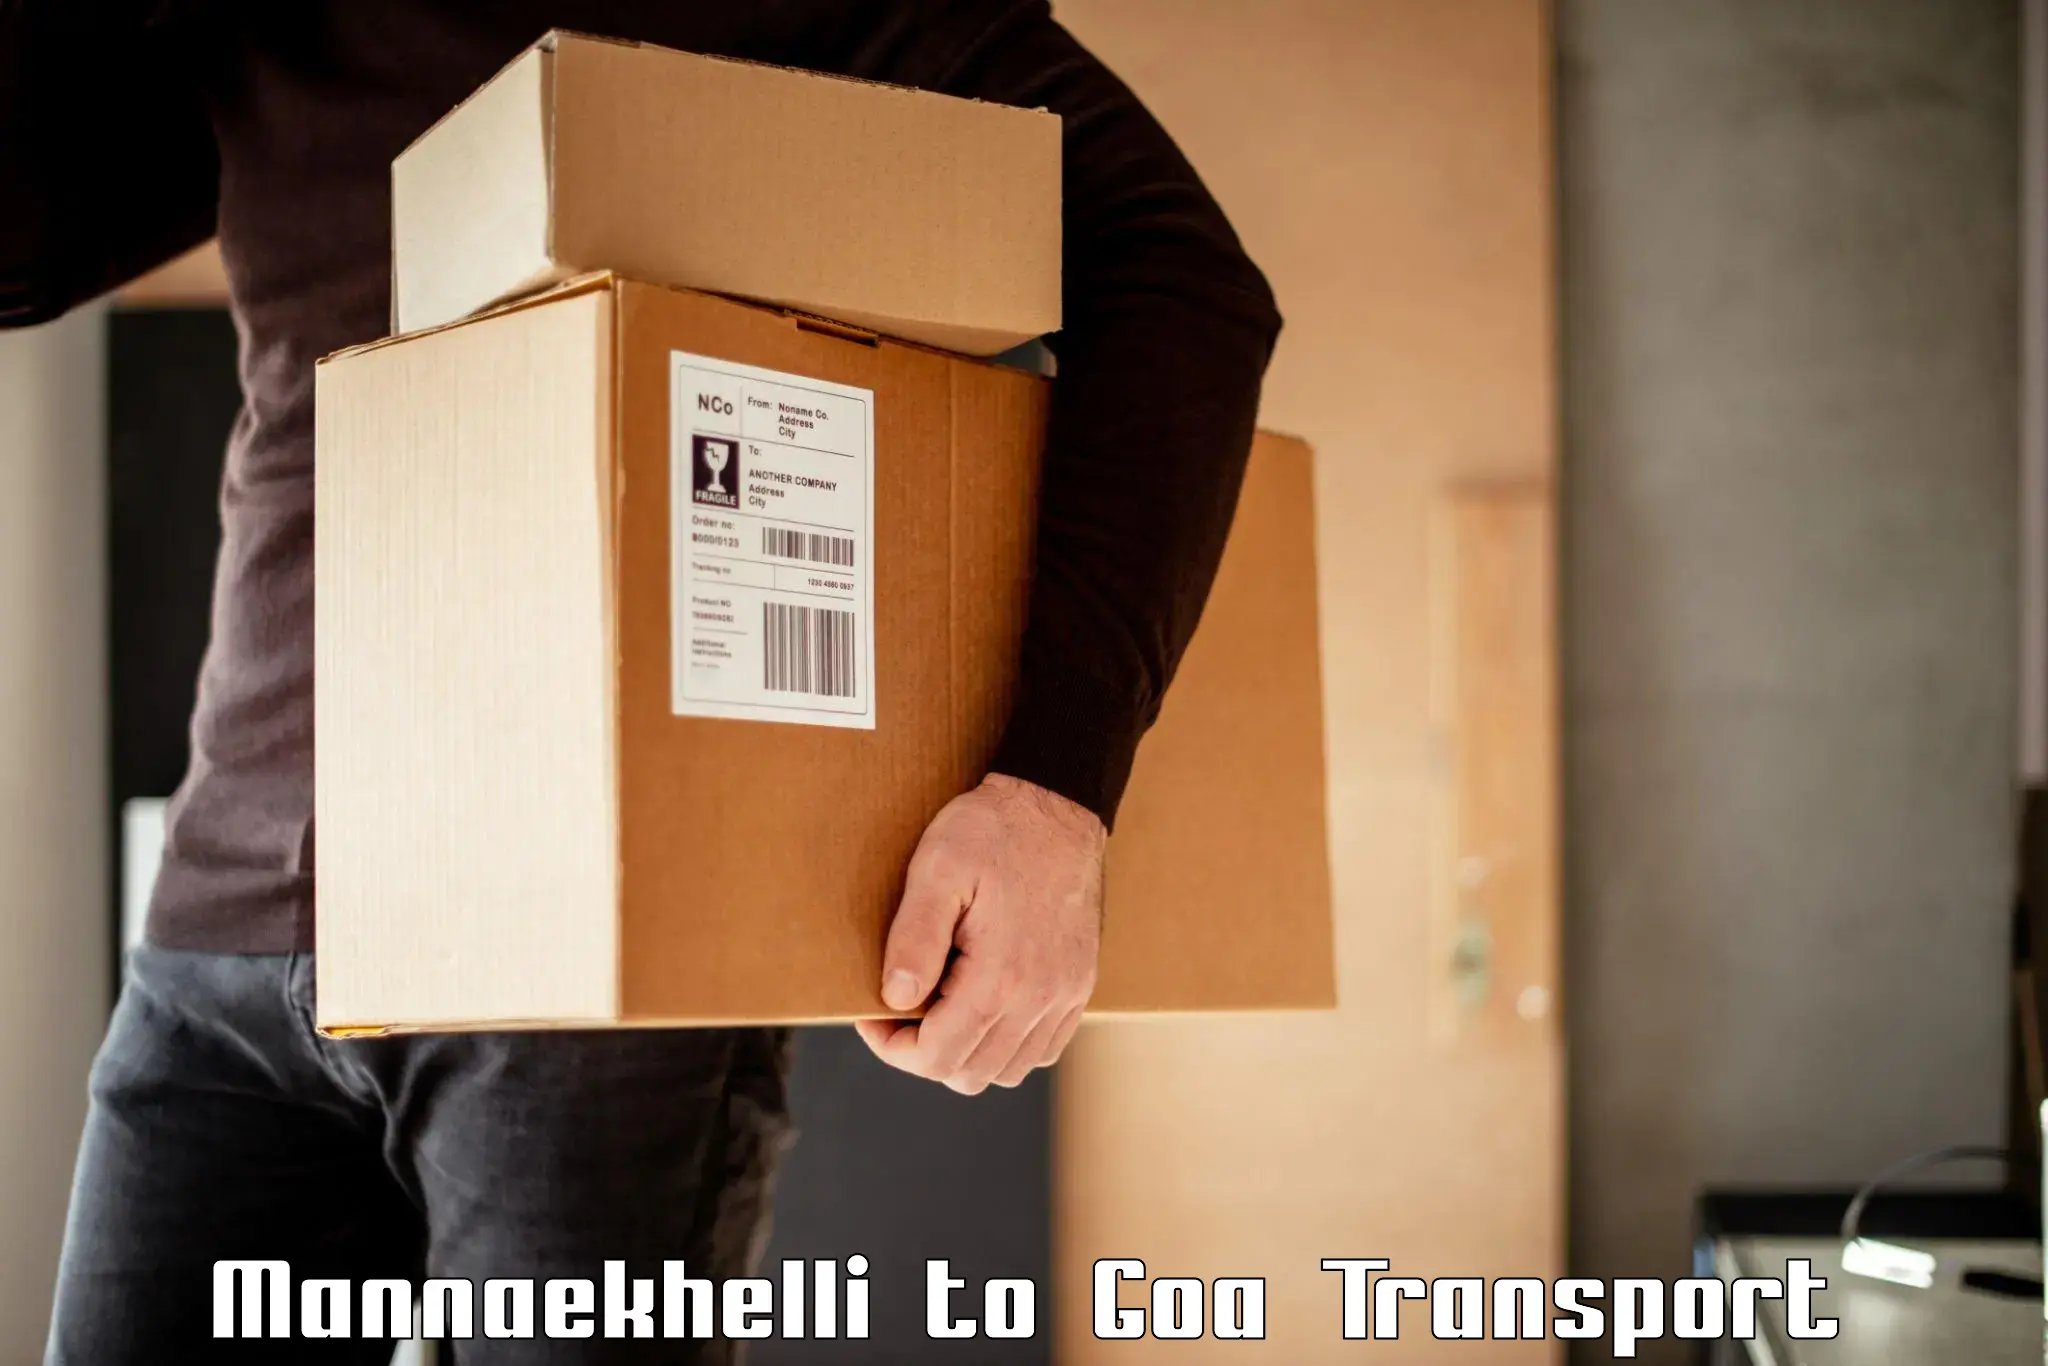 Cargo transport services Mannaekhelli to IIT Goa